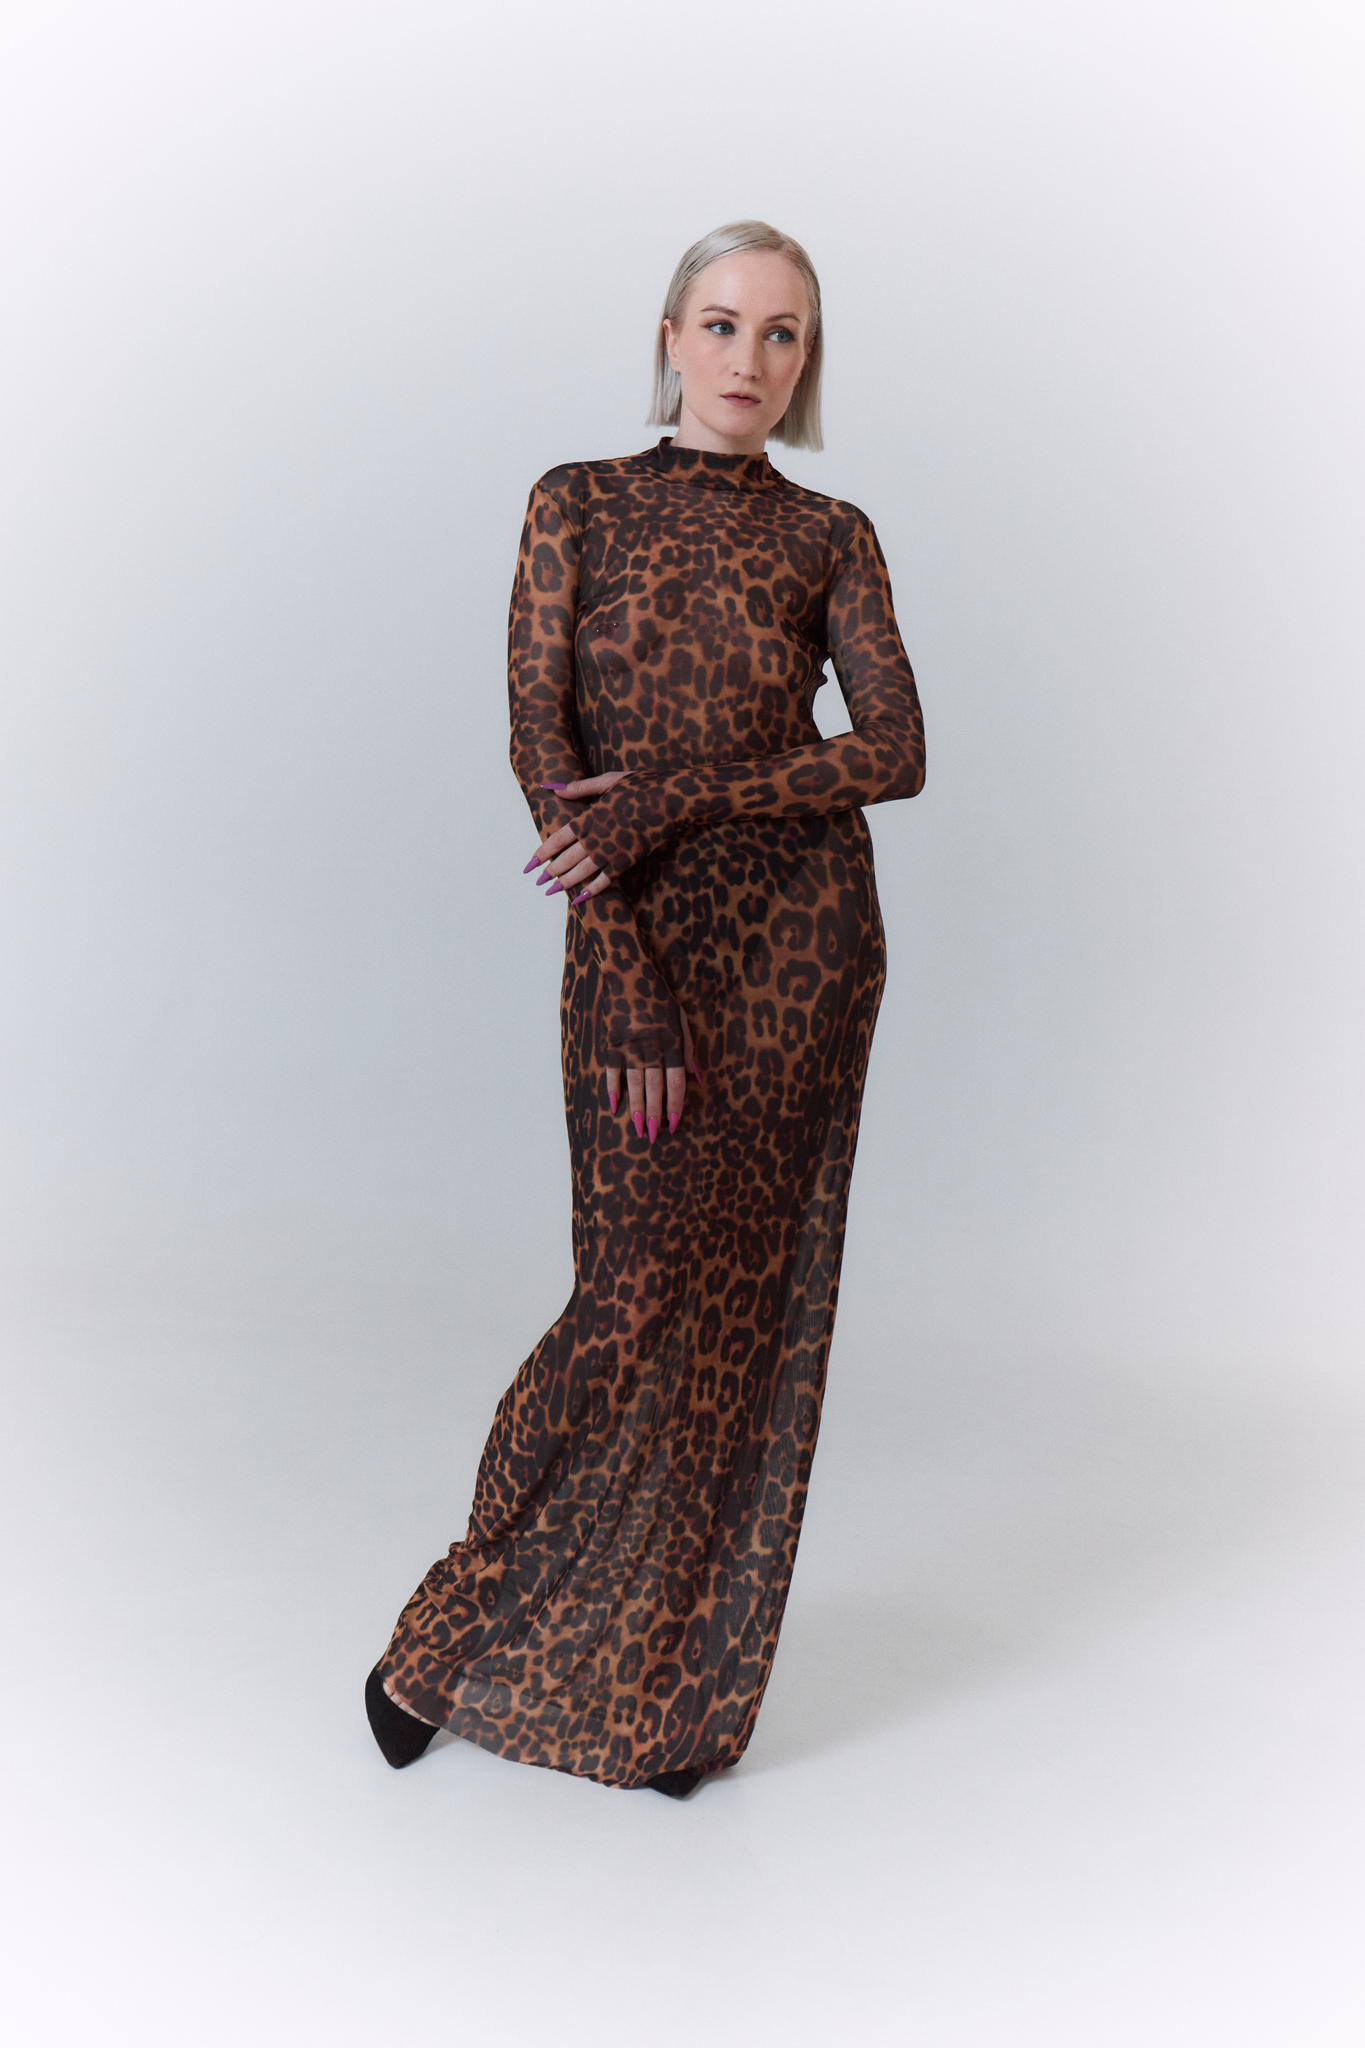 Стоп безвкусице: с чем сочетать, как выбрать и носить леопардовое платье.